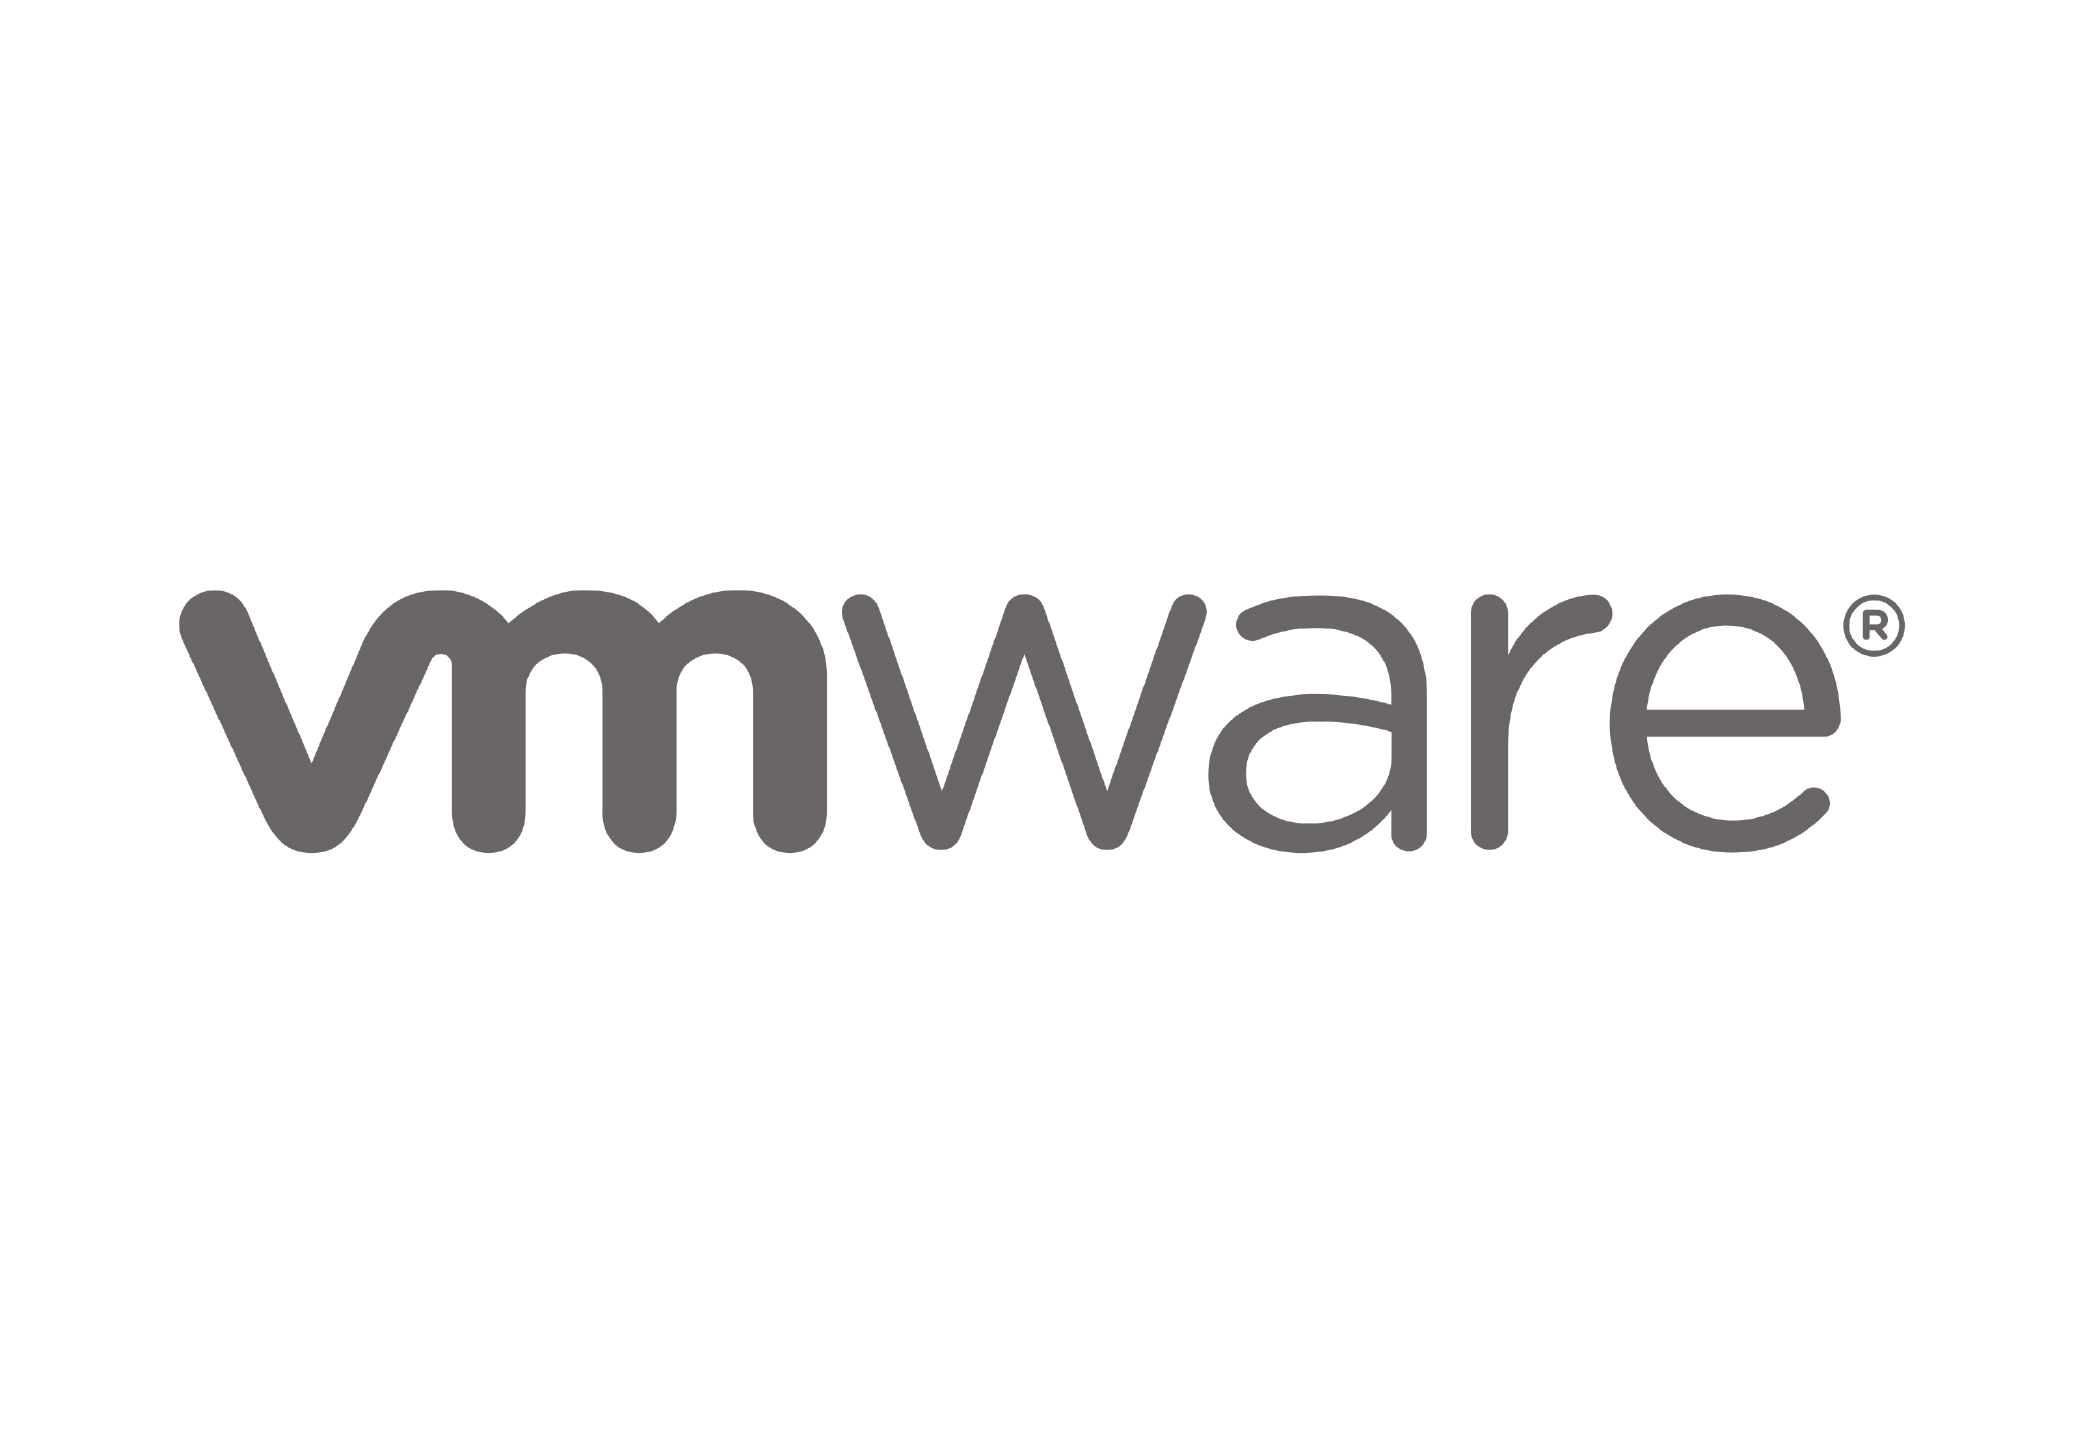 VMware VSphere logo